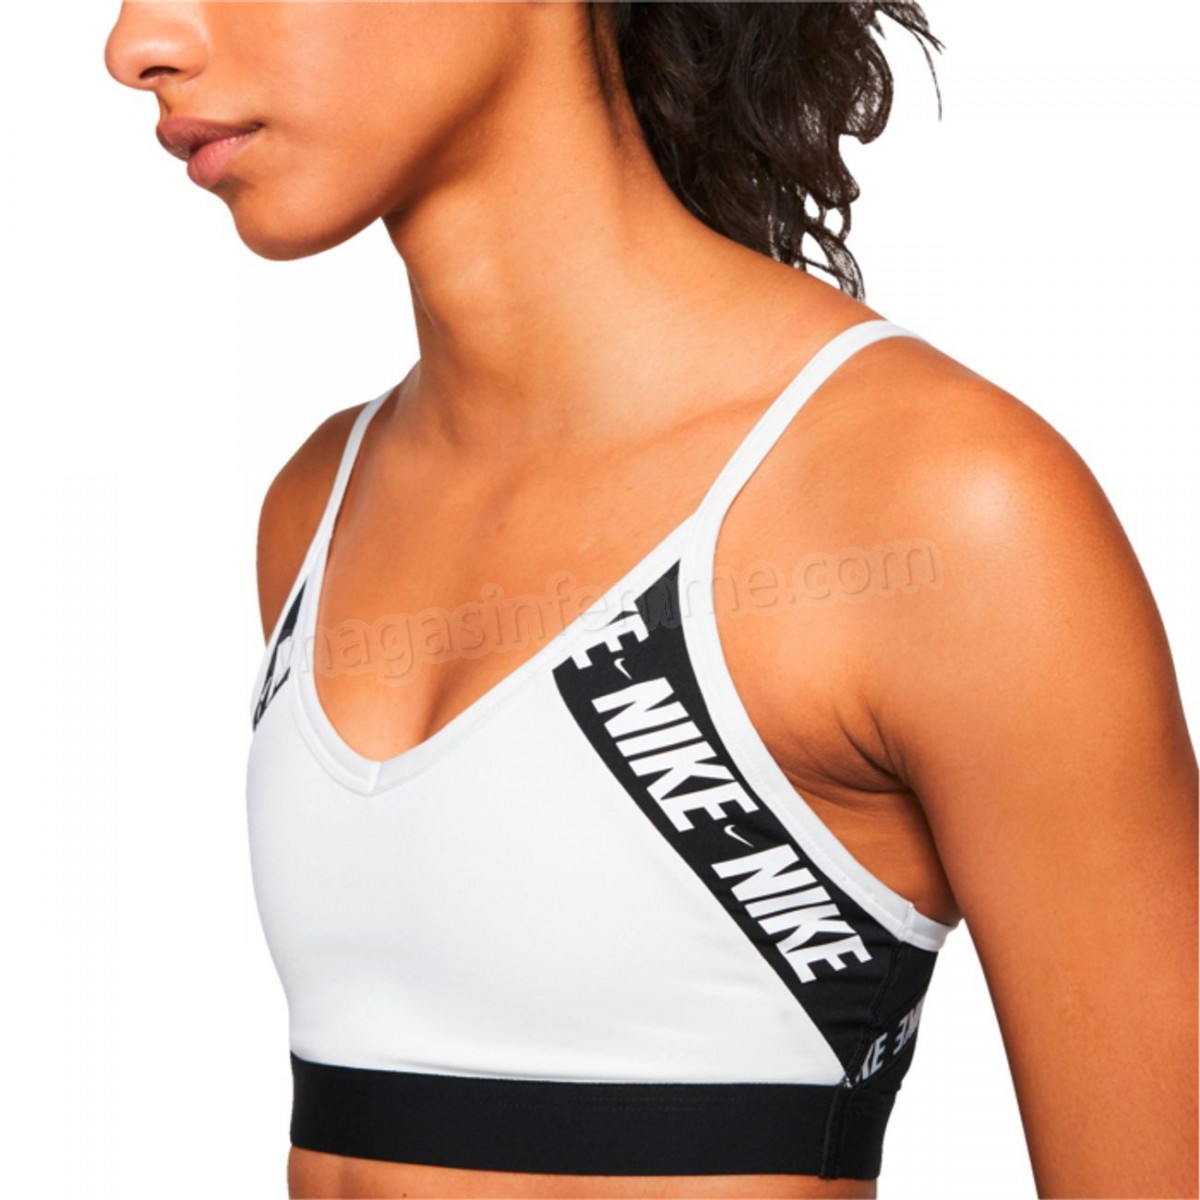 Nike-BRASSIERE Fitness femme NIKE INDY LOGO en solde - -2